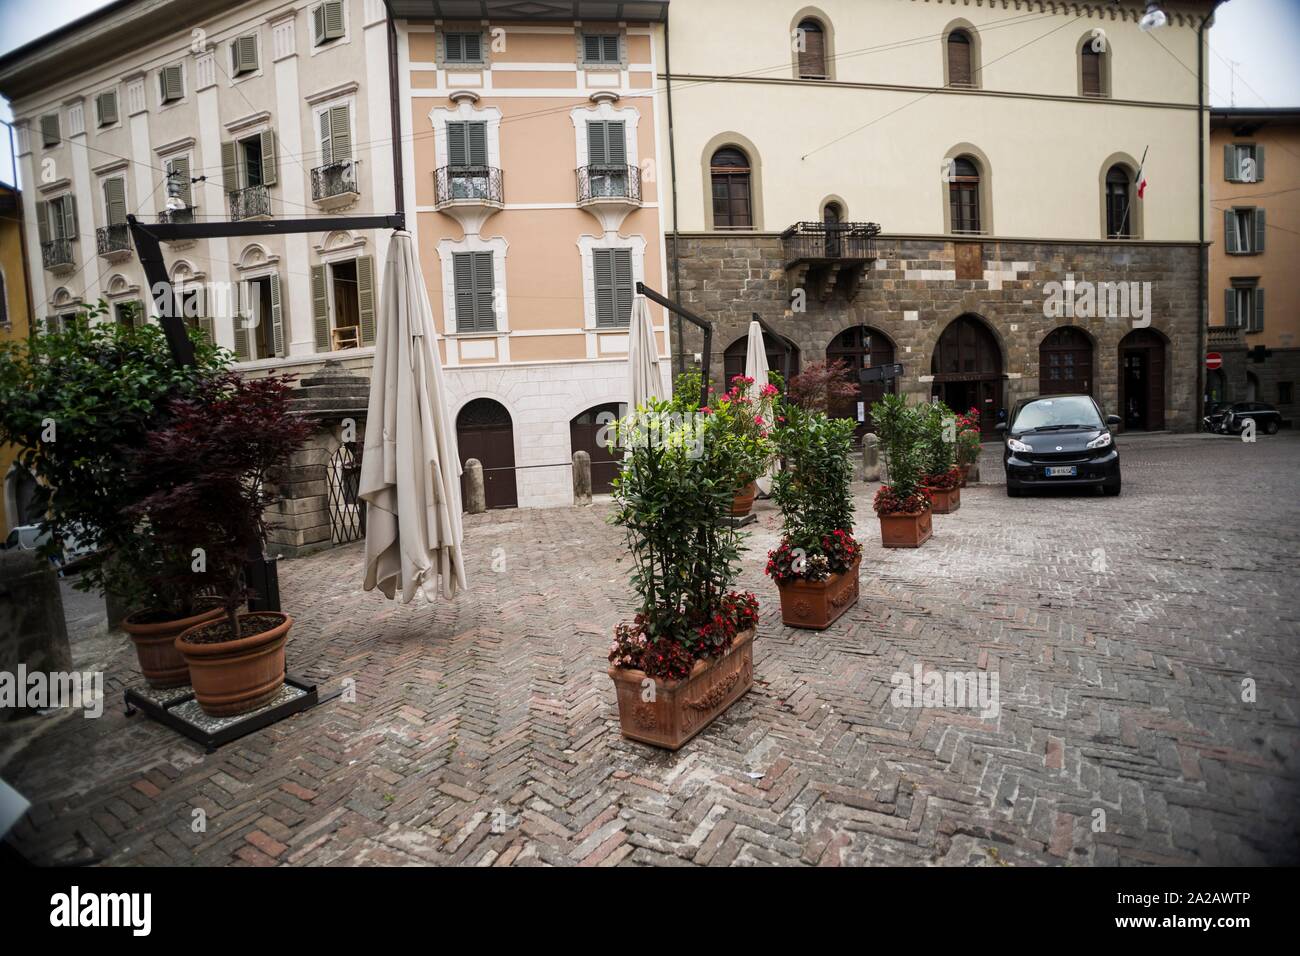 Piazza Mercato delle Scarpe (Shoe Market Square), Upper Town (Città Alta).  Bergamo, Lombardy, Italy, Europe Stock Photo - Alamy